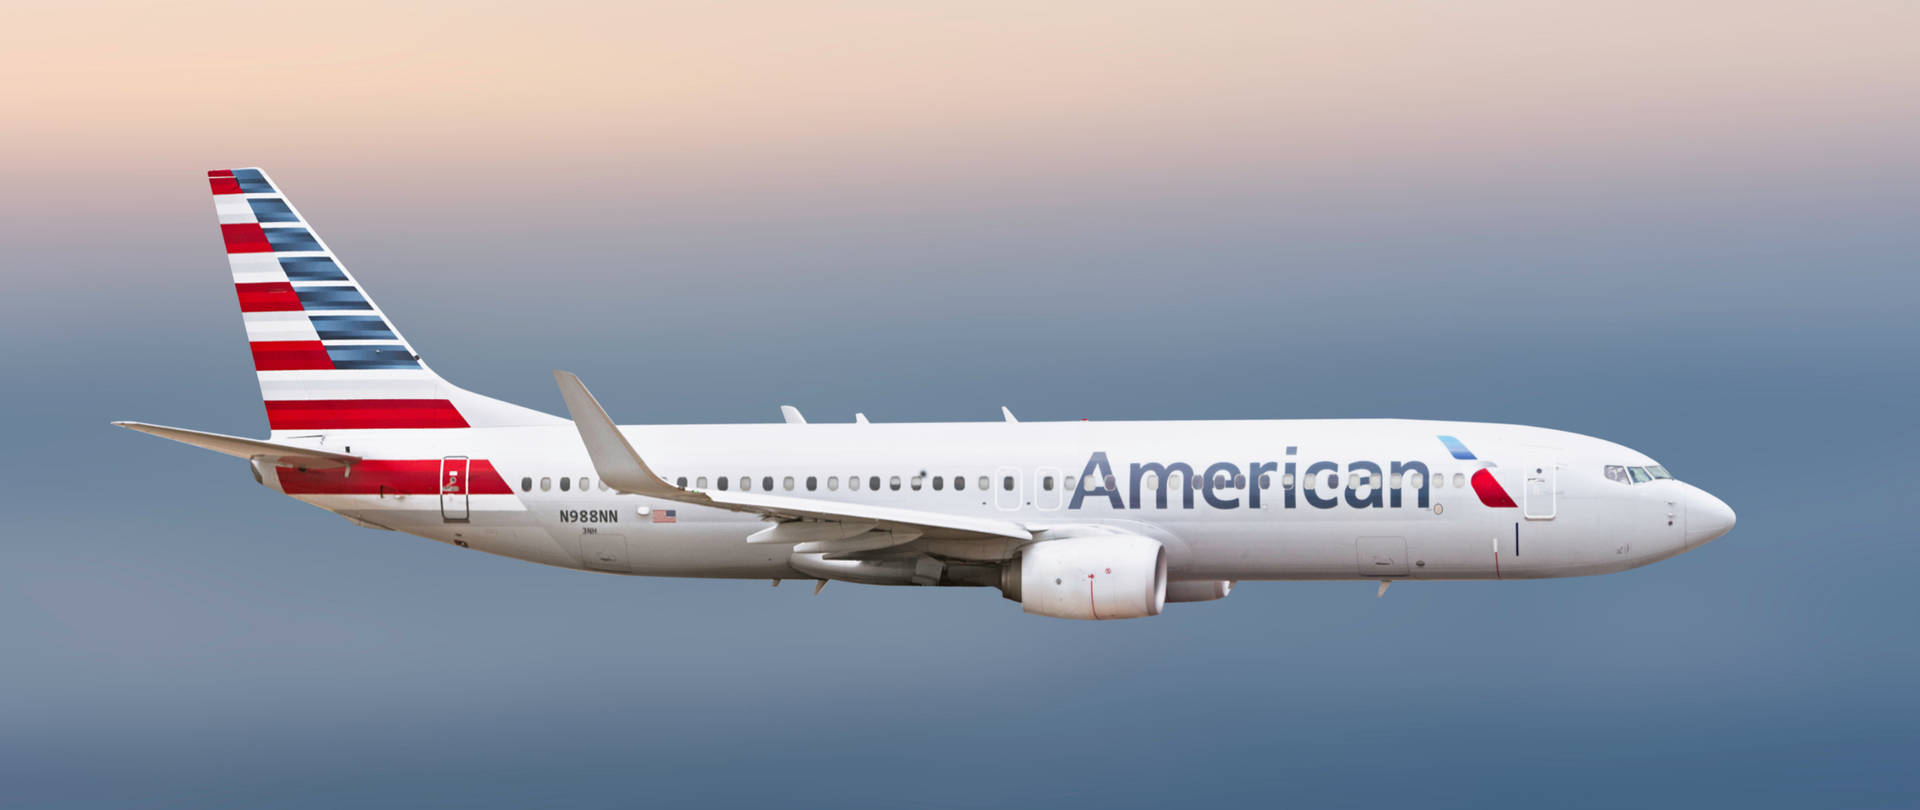 American Airlines N988al Airbus Background